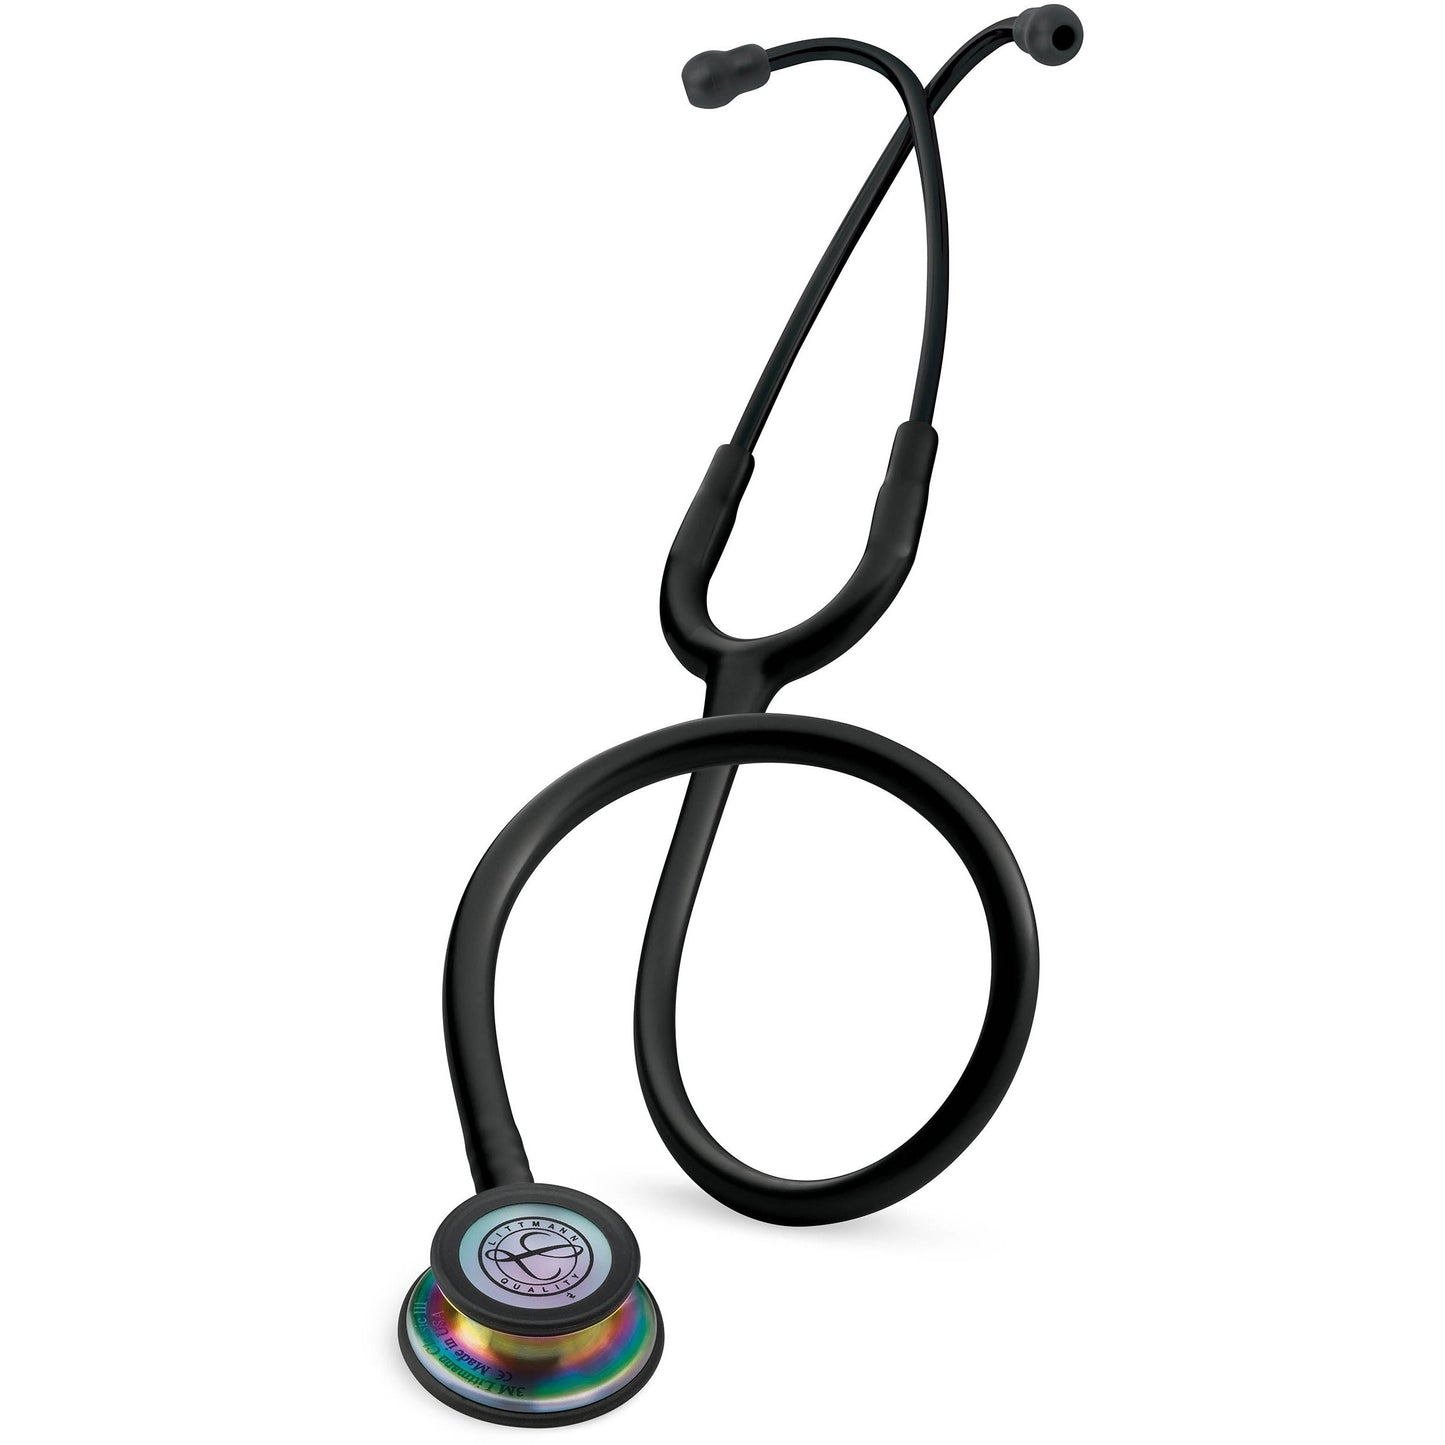 3M™ Littmann® Classic III™ -stetoskooppi, tarkkailuun, sateenkaarenvärinen rintakappale, musta suppilo, kuuntelukaaret ja letkusto, 27 tuumaa, 5870